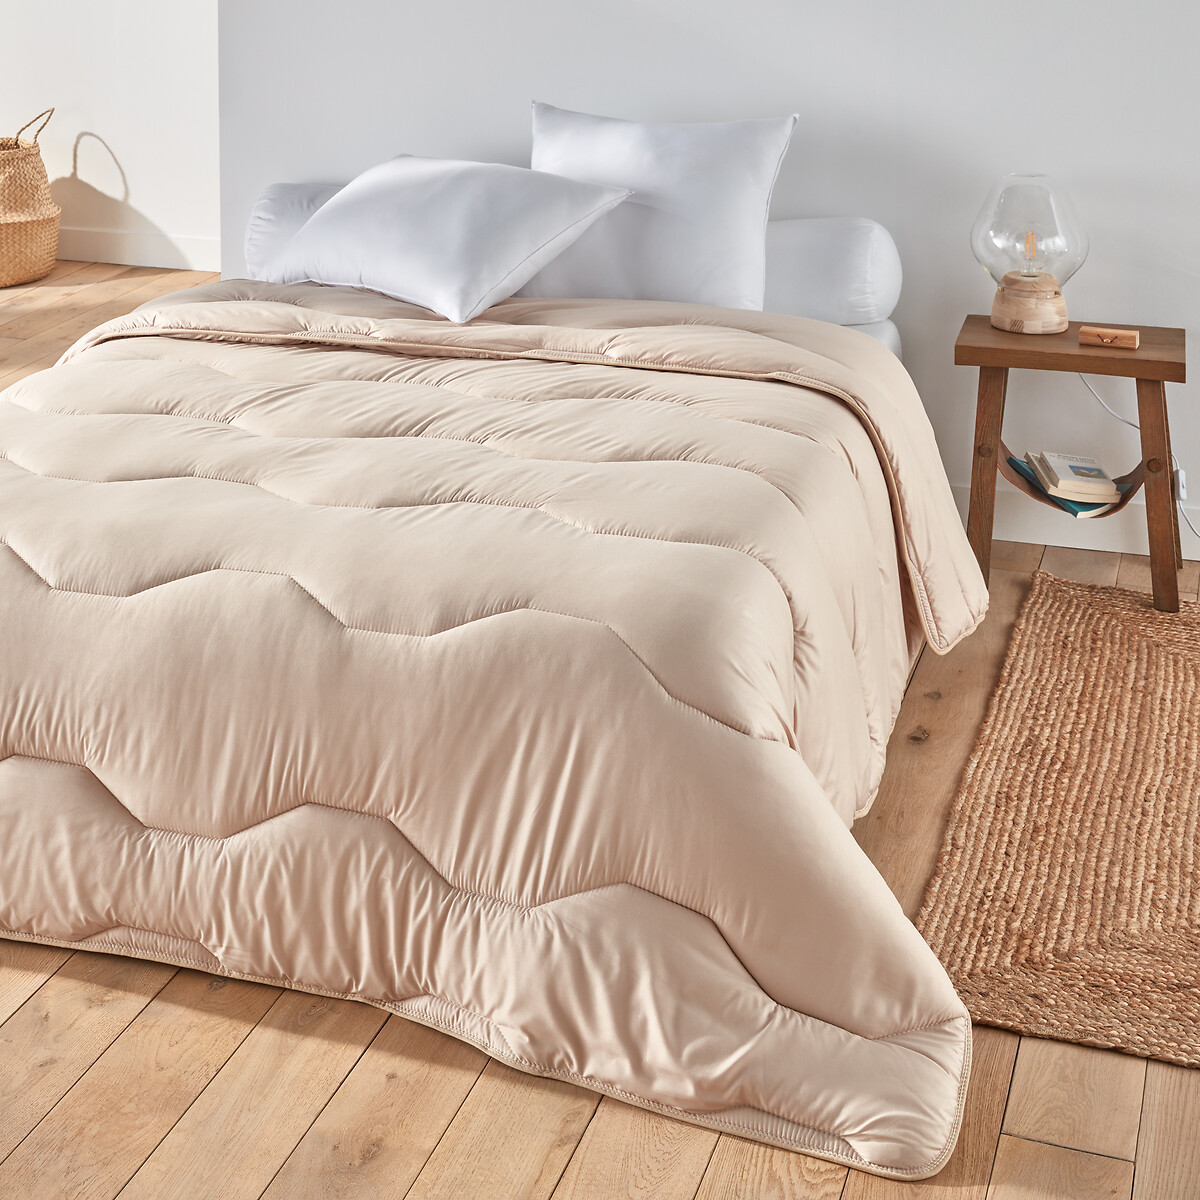 Одеяло La Redoute COLOR  полиэстера  гм 260 x 240 см бежевый, размер 260 x 240 см - фото 1